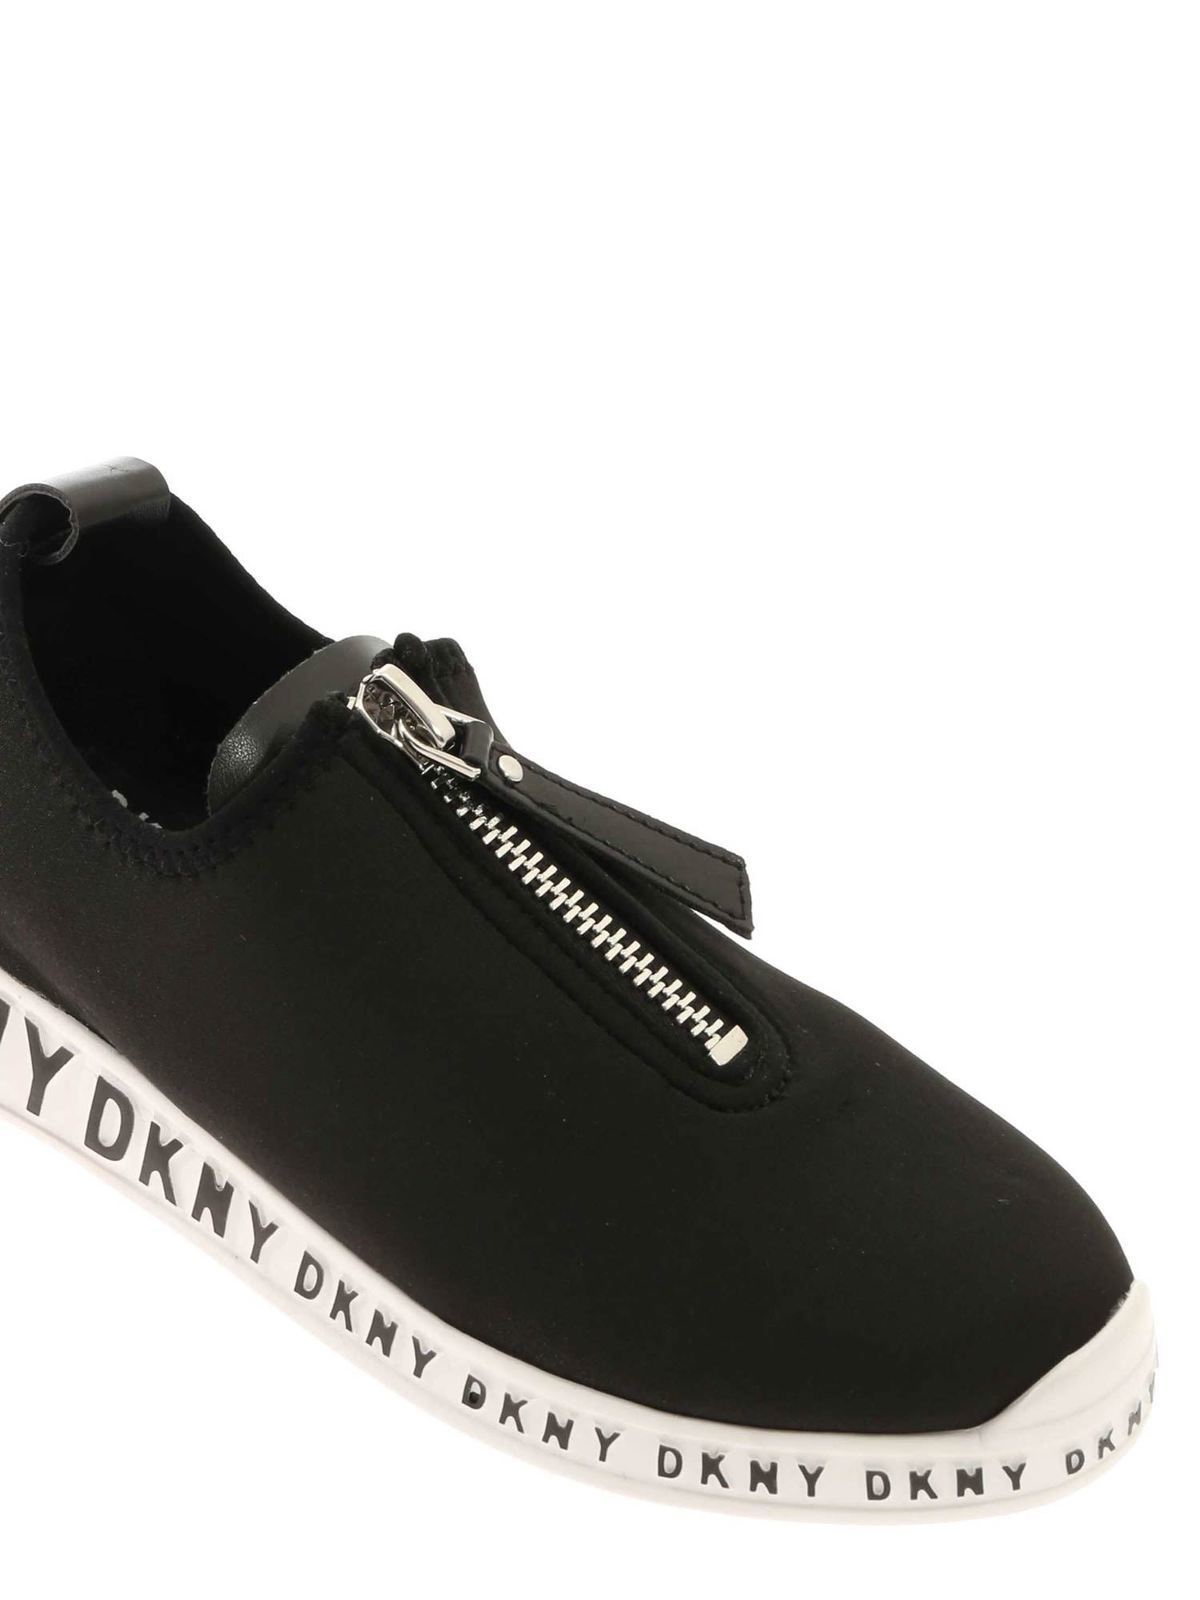 Dkny - Melissa sneakers in black - trainers - K4857882NEOPRENEBLACKBLK